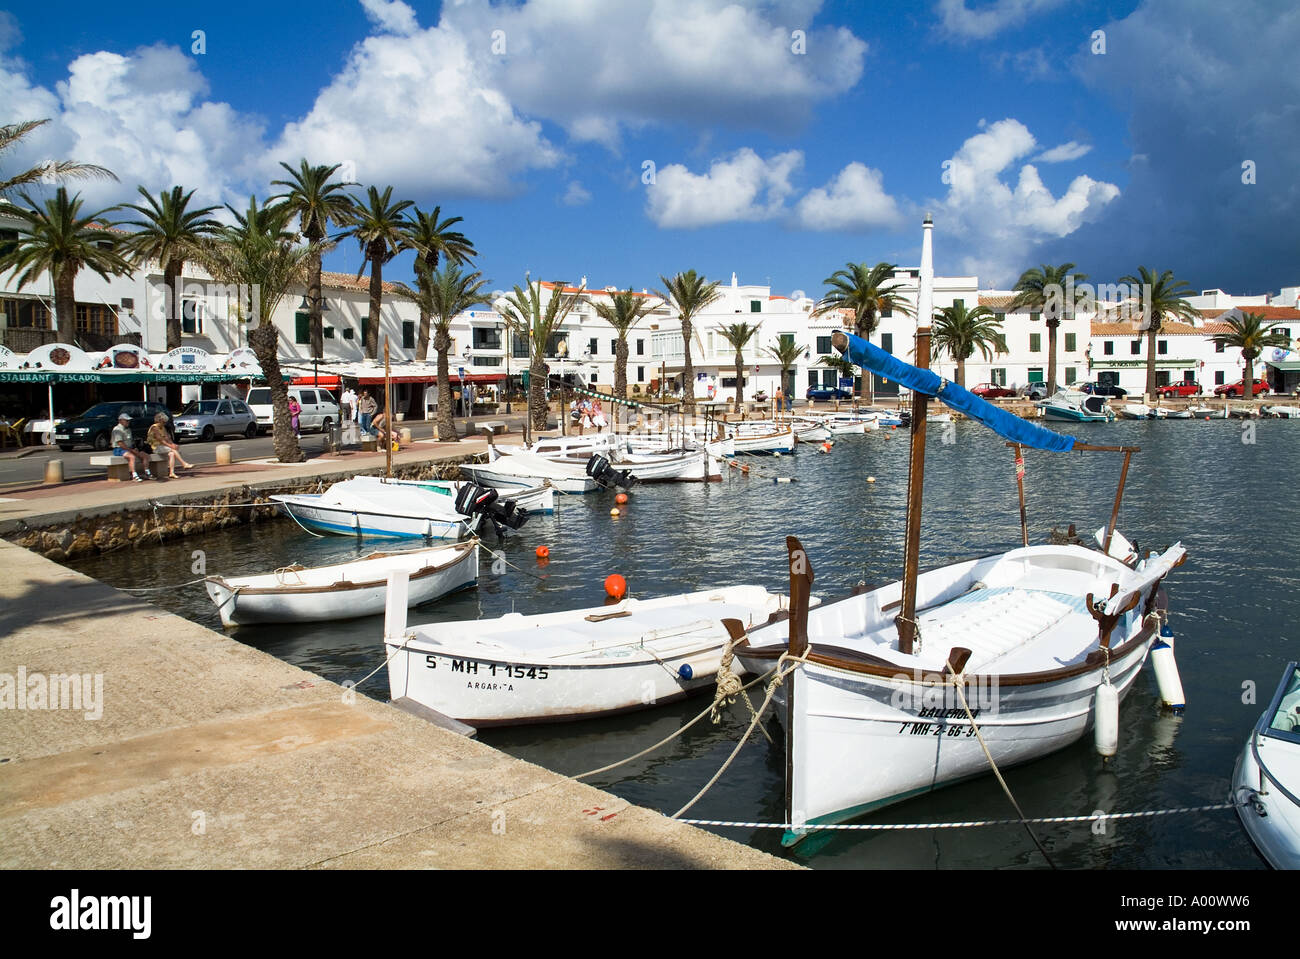 dh Menorca Boote am Meer FORNELLS MENORCA Fischerboot am Kai Urlaub Tourismus sonnigen Hafen verankert Stockfoto